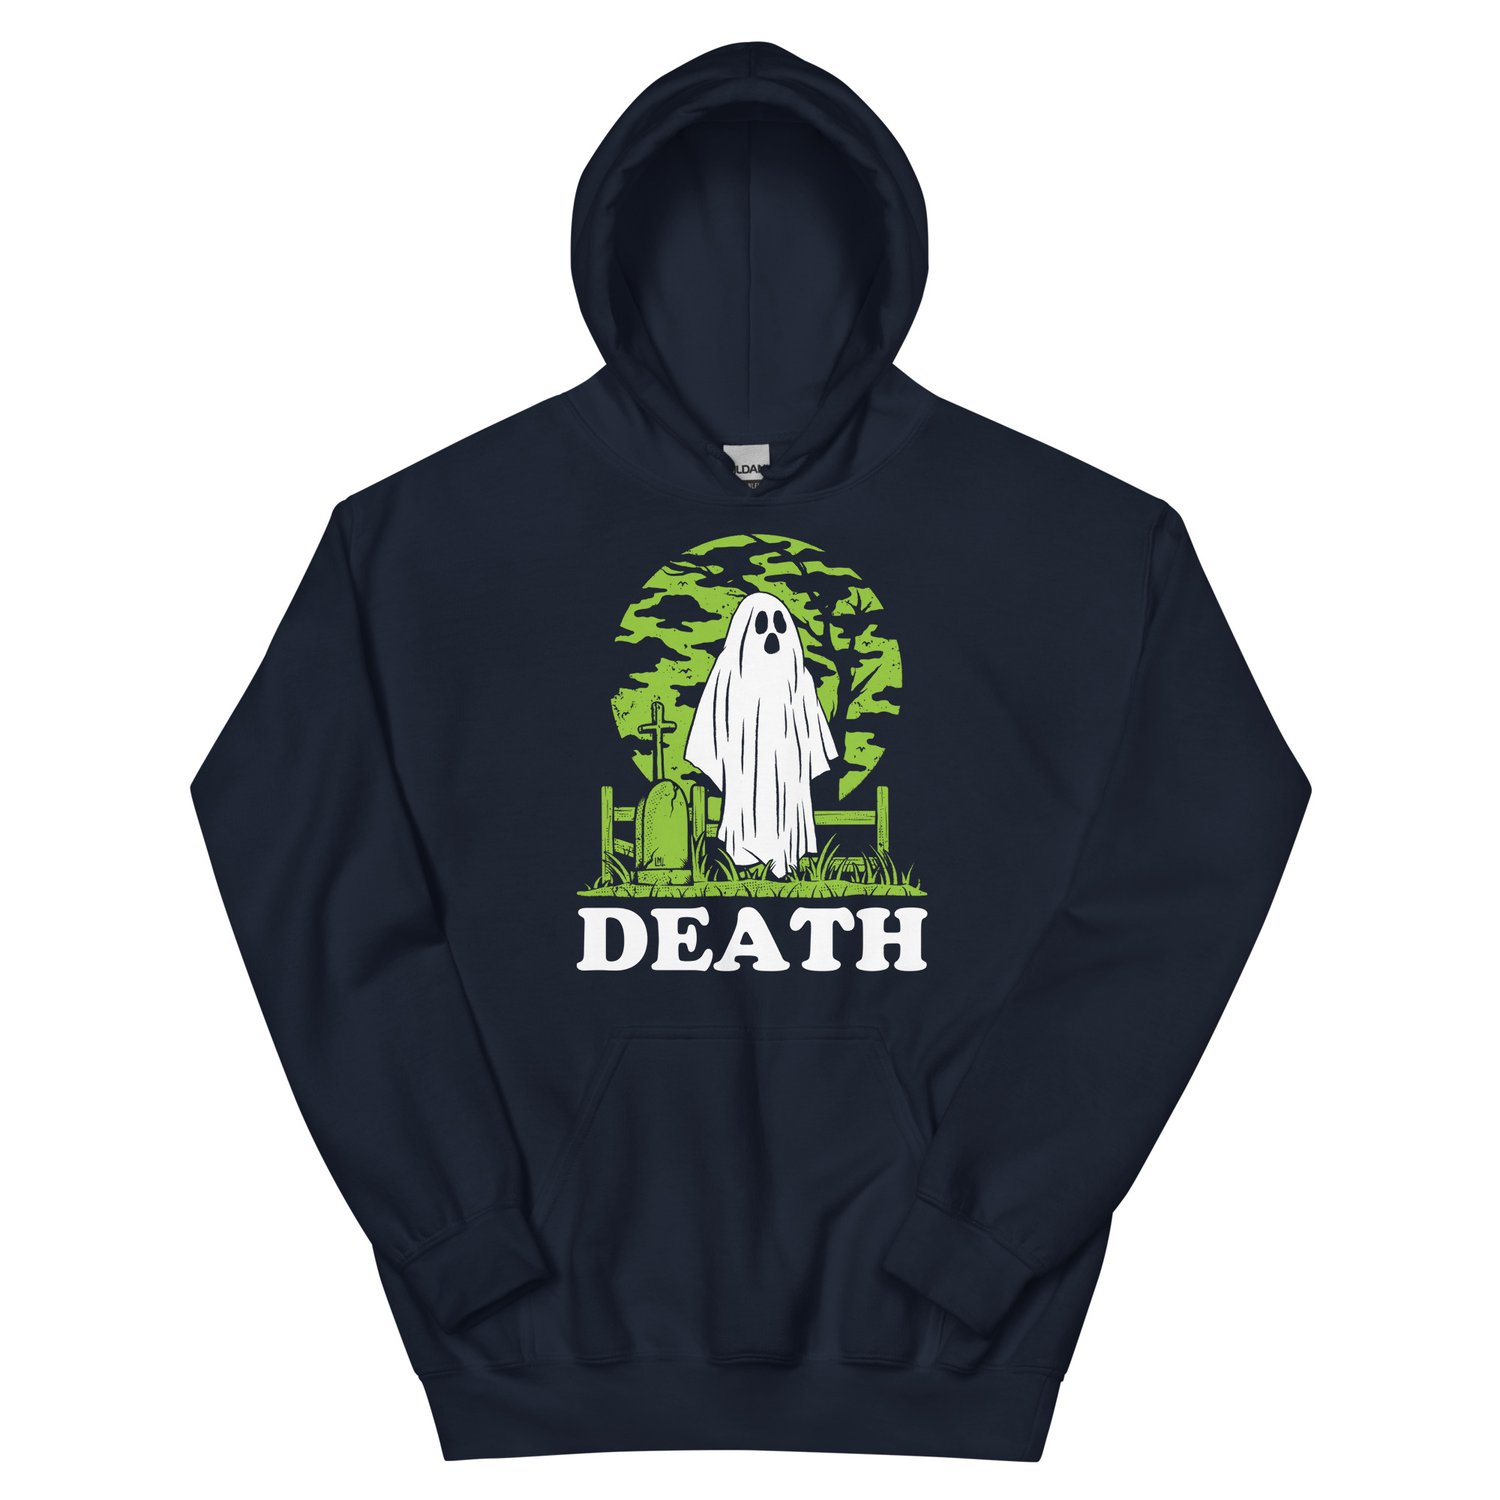 Image of Death hoodie